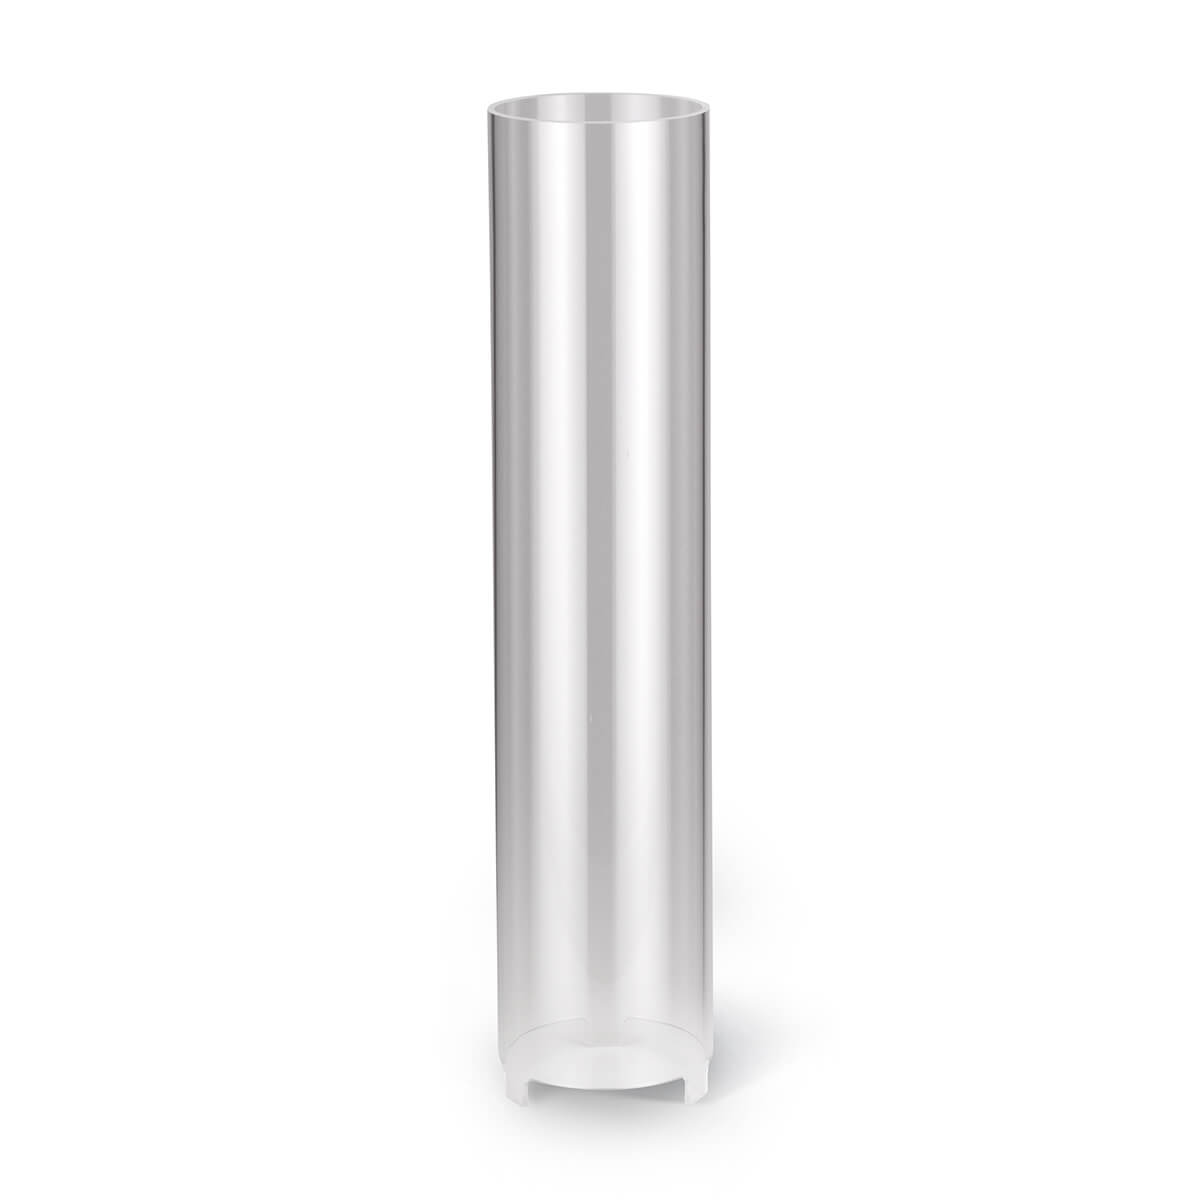 Windschutz für Kerzen – Plexiglas – 310/70 mm